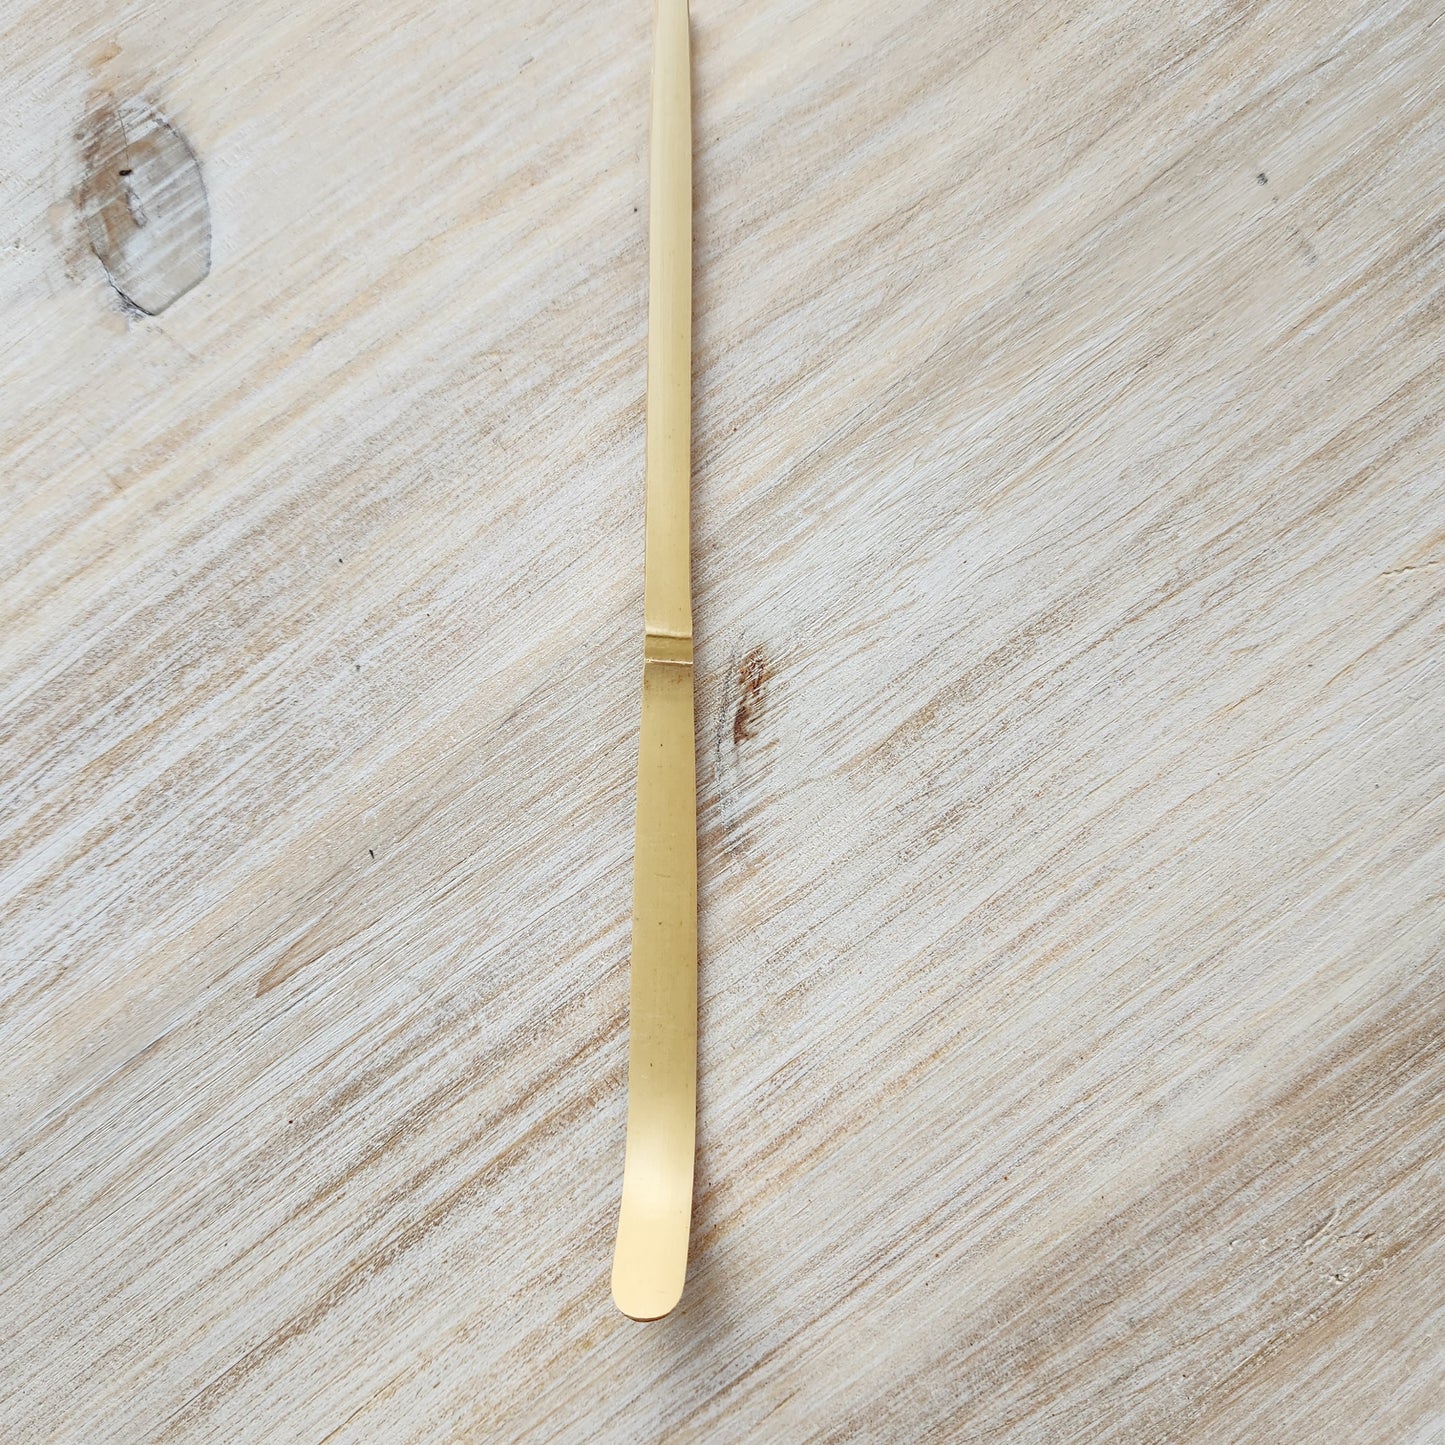 Chashaku, Matcha Bamboo Spoon